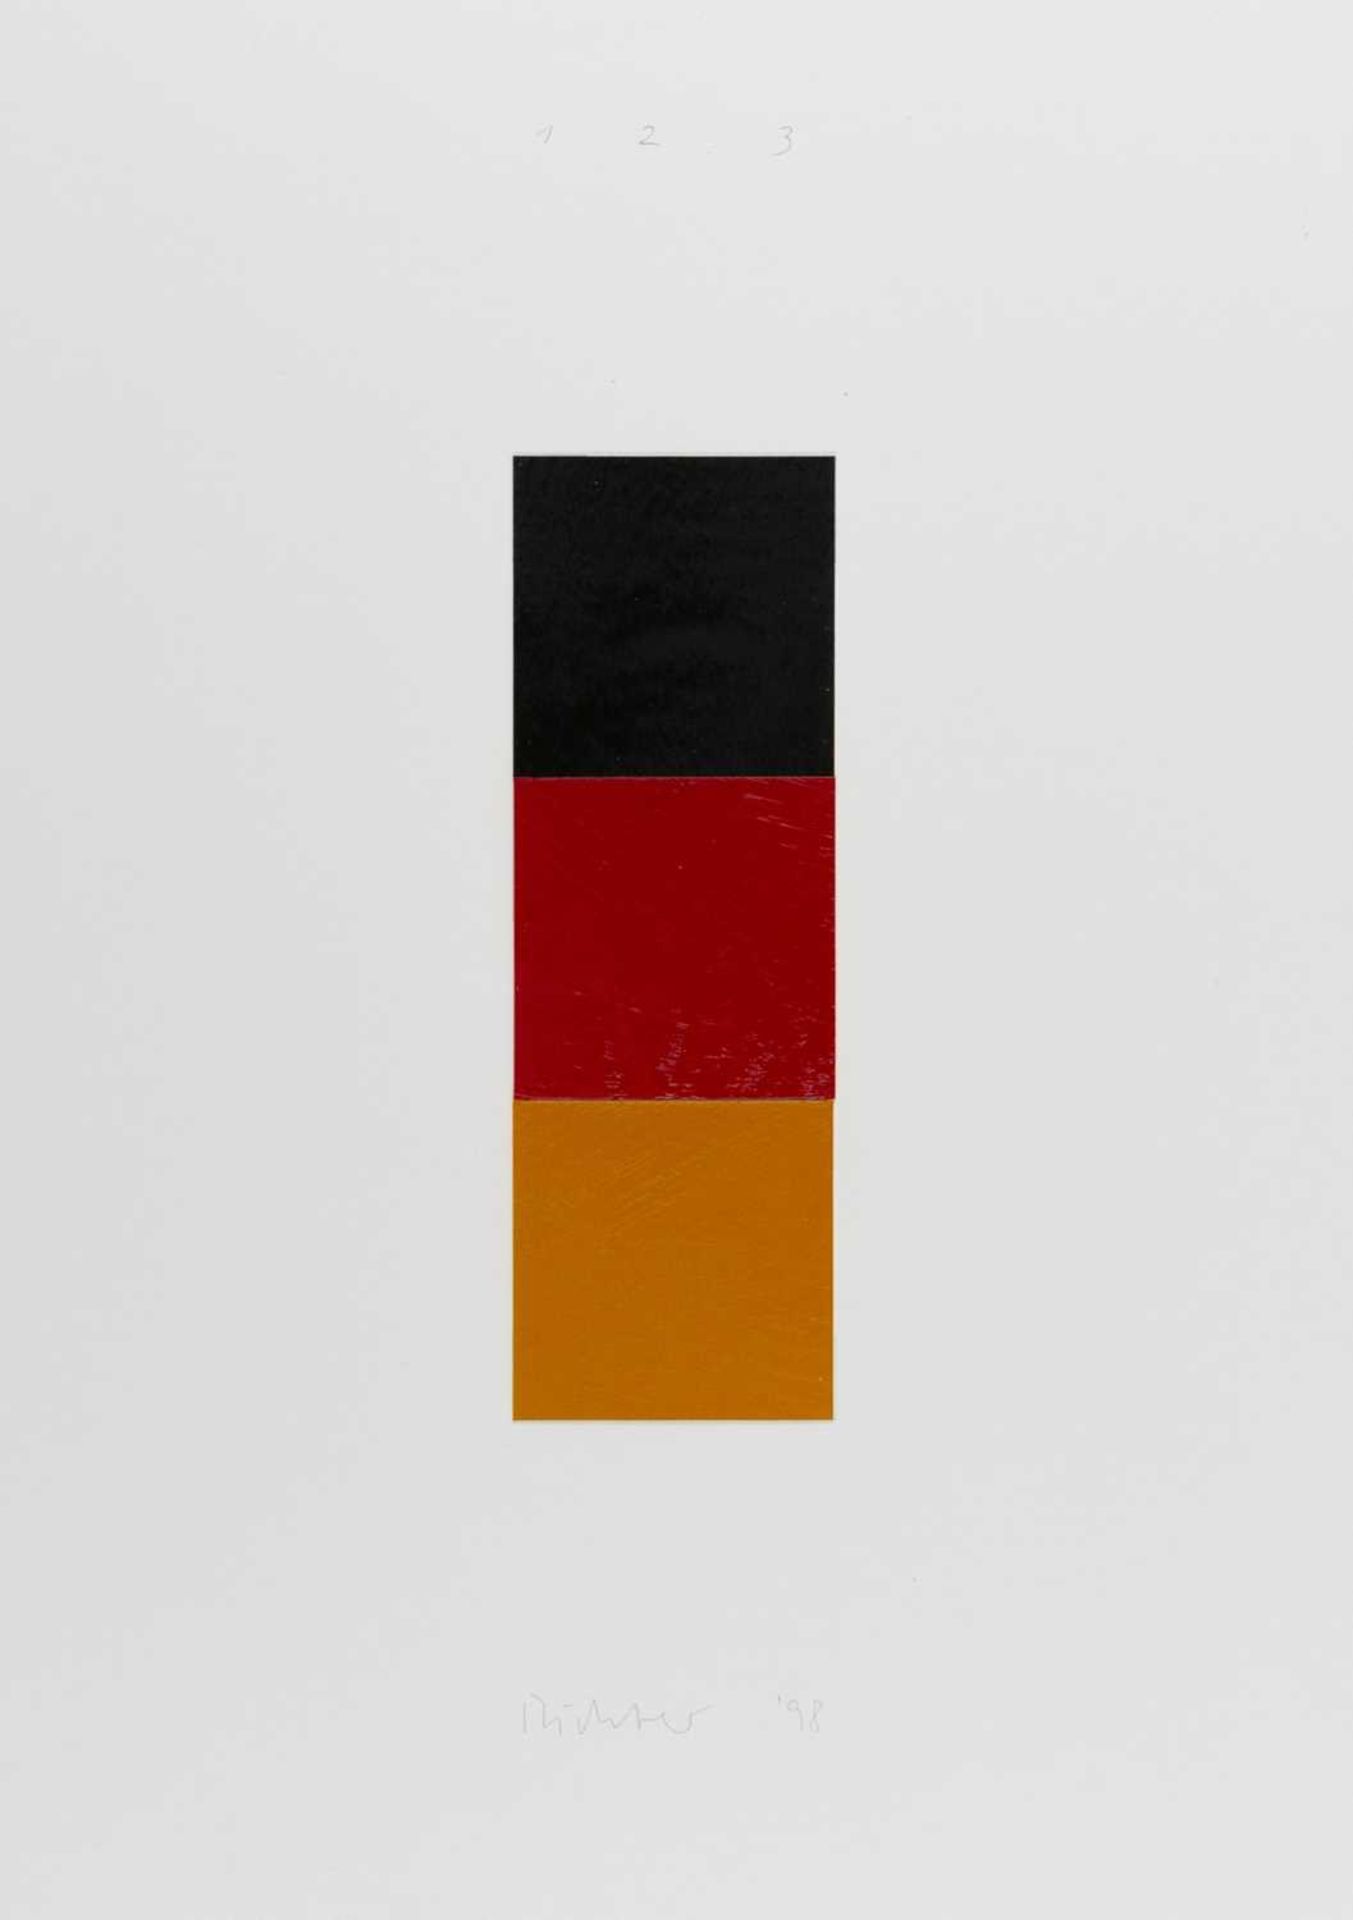 Gerhard Richter (1932 Dresden – lebt in Köln)